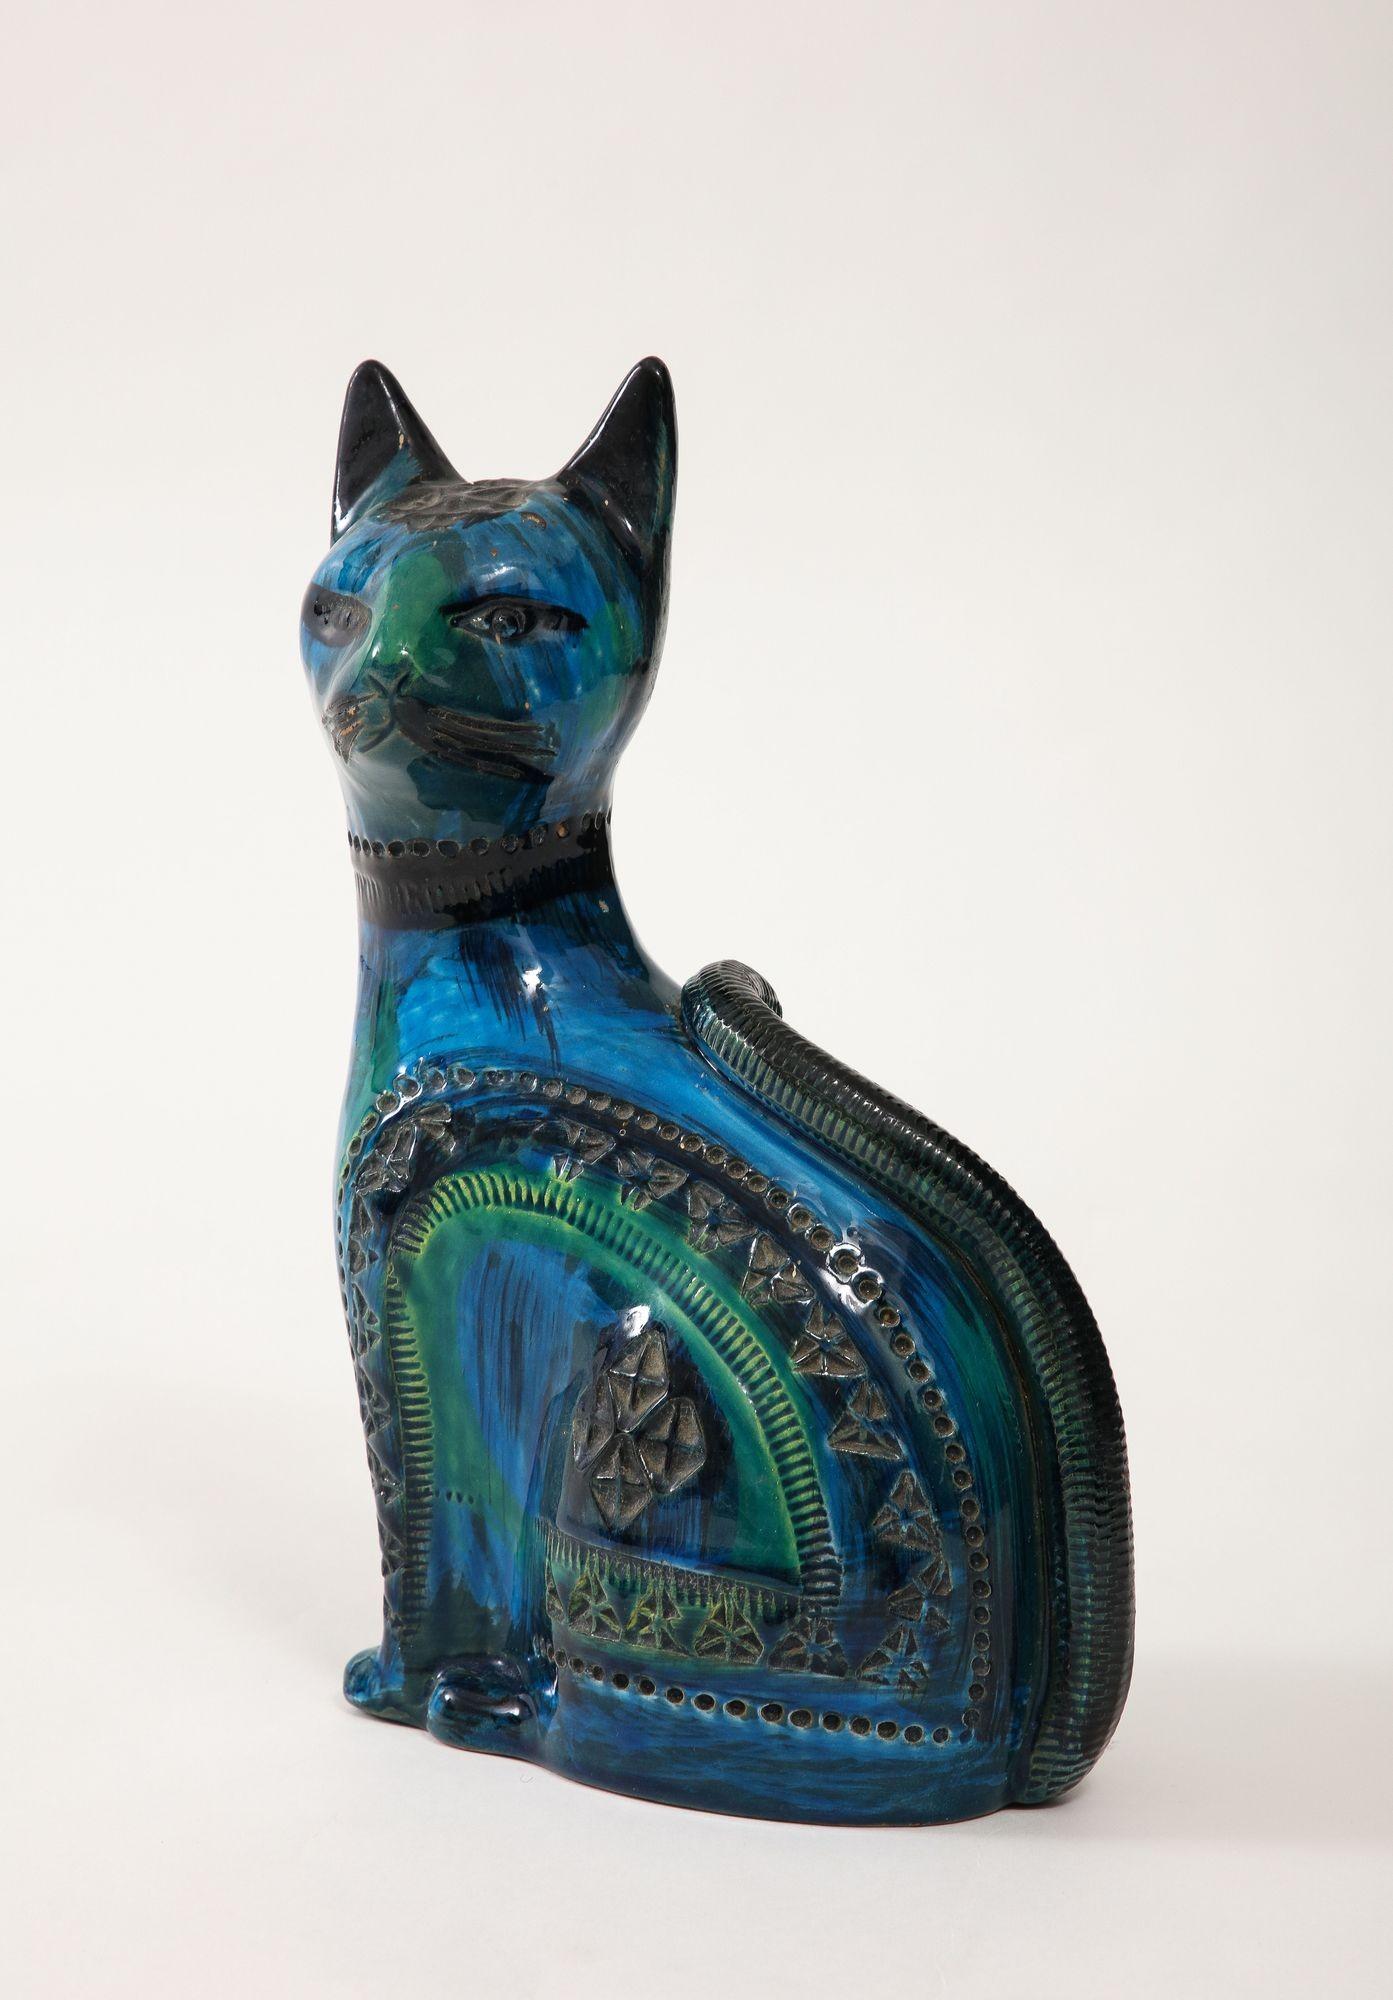 Il Gatto in ceramica di Aldo Londi per Bitossi, realizzato con l'iconico smalto 